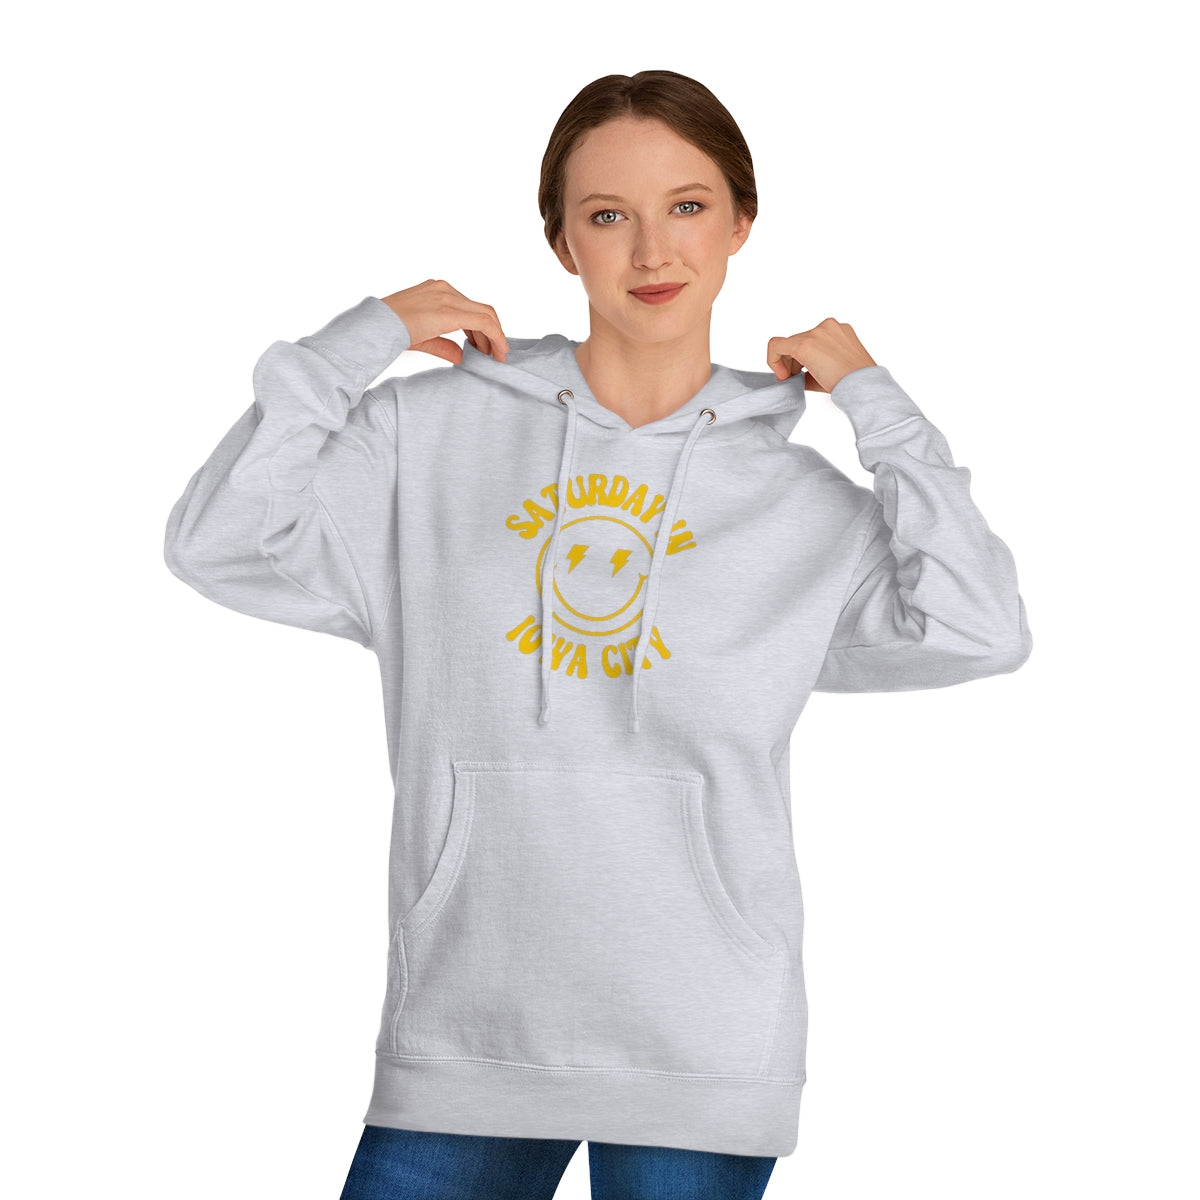 Smiley Iowa City Hooded Sweatshirt - GG - ITC